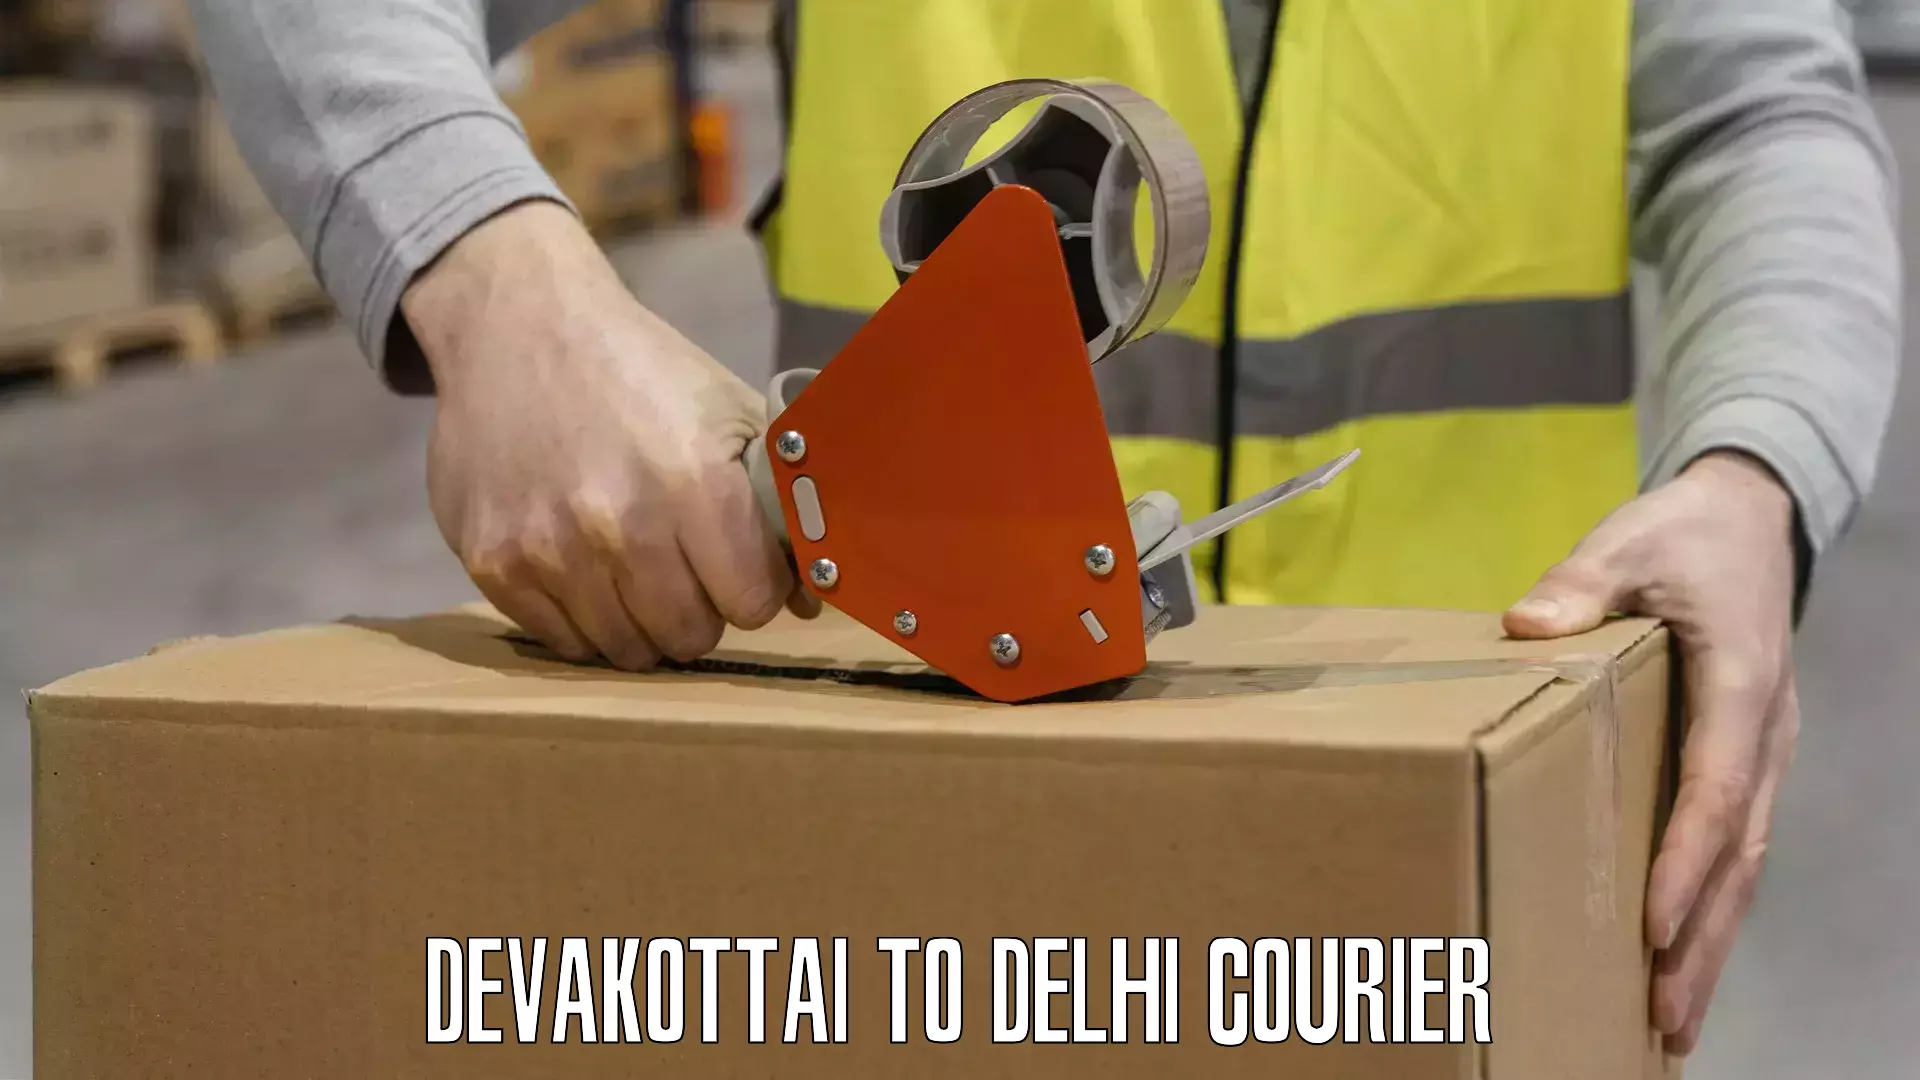 Nationwide shipping capabilities Devakottai to Burari